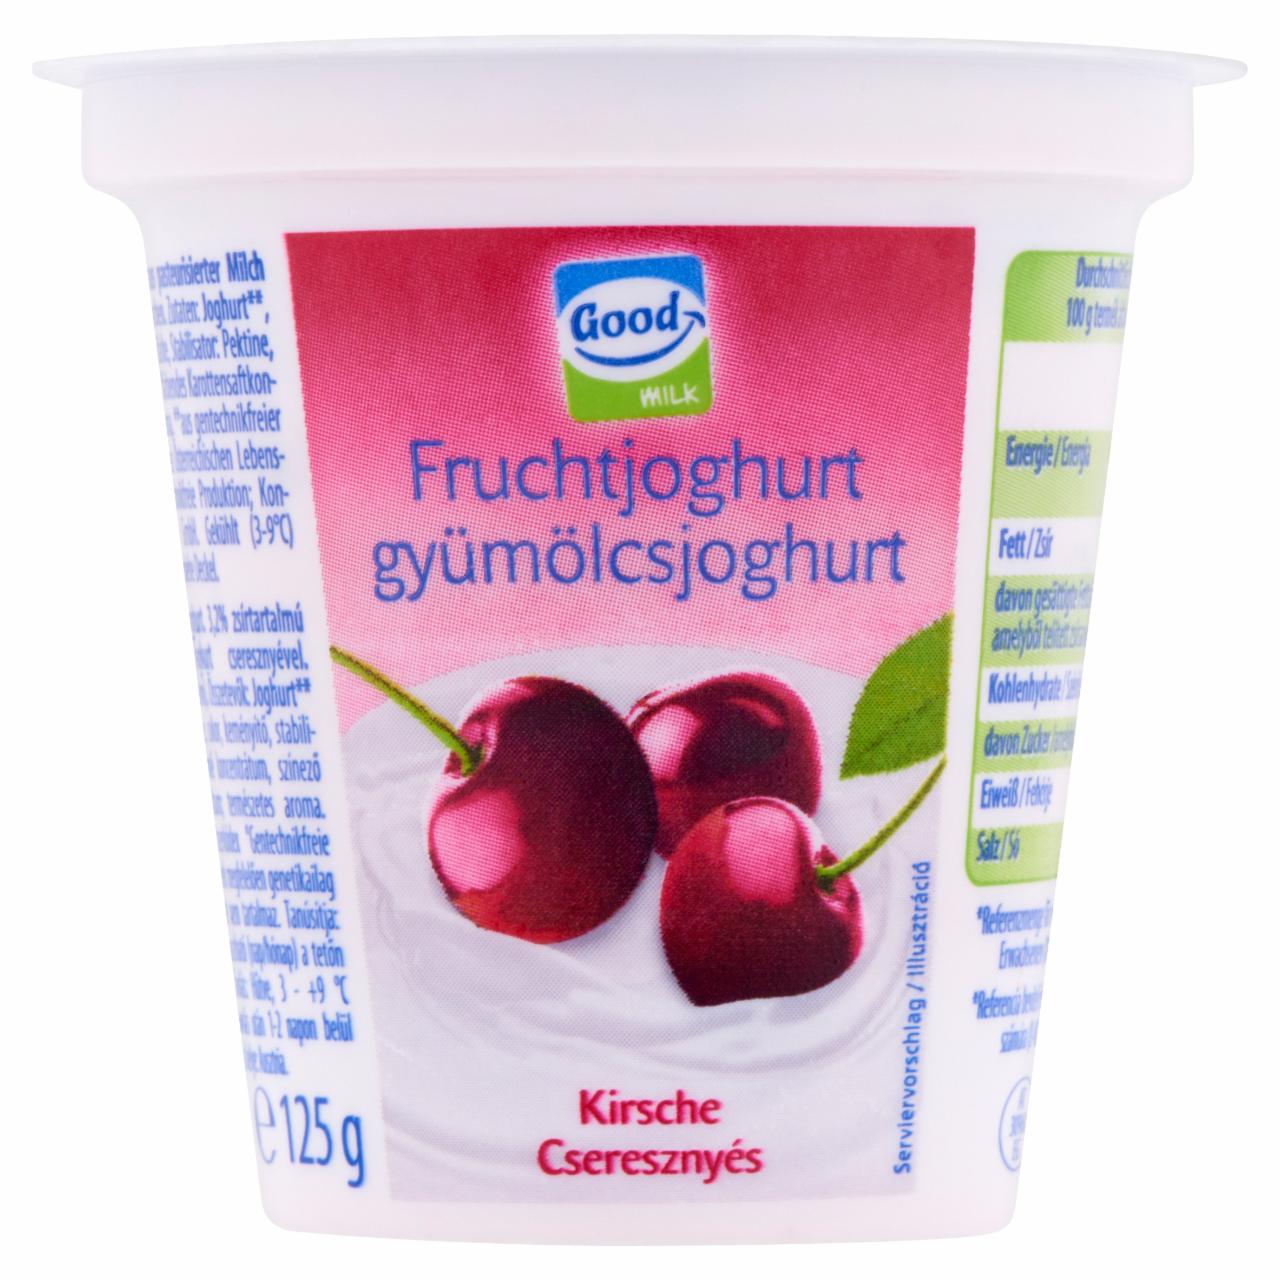 Képek - Good Milk cseresznyés gyümölcsjoghurt 125 g